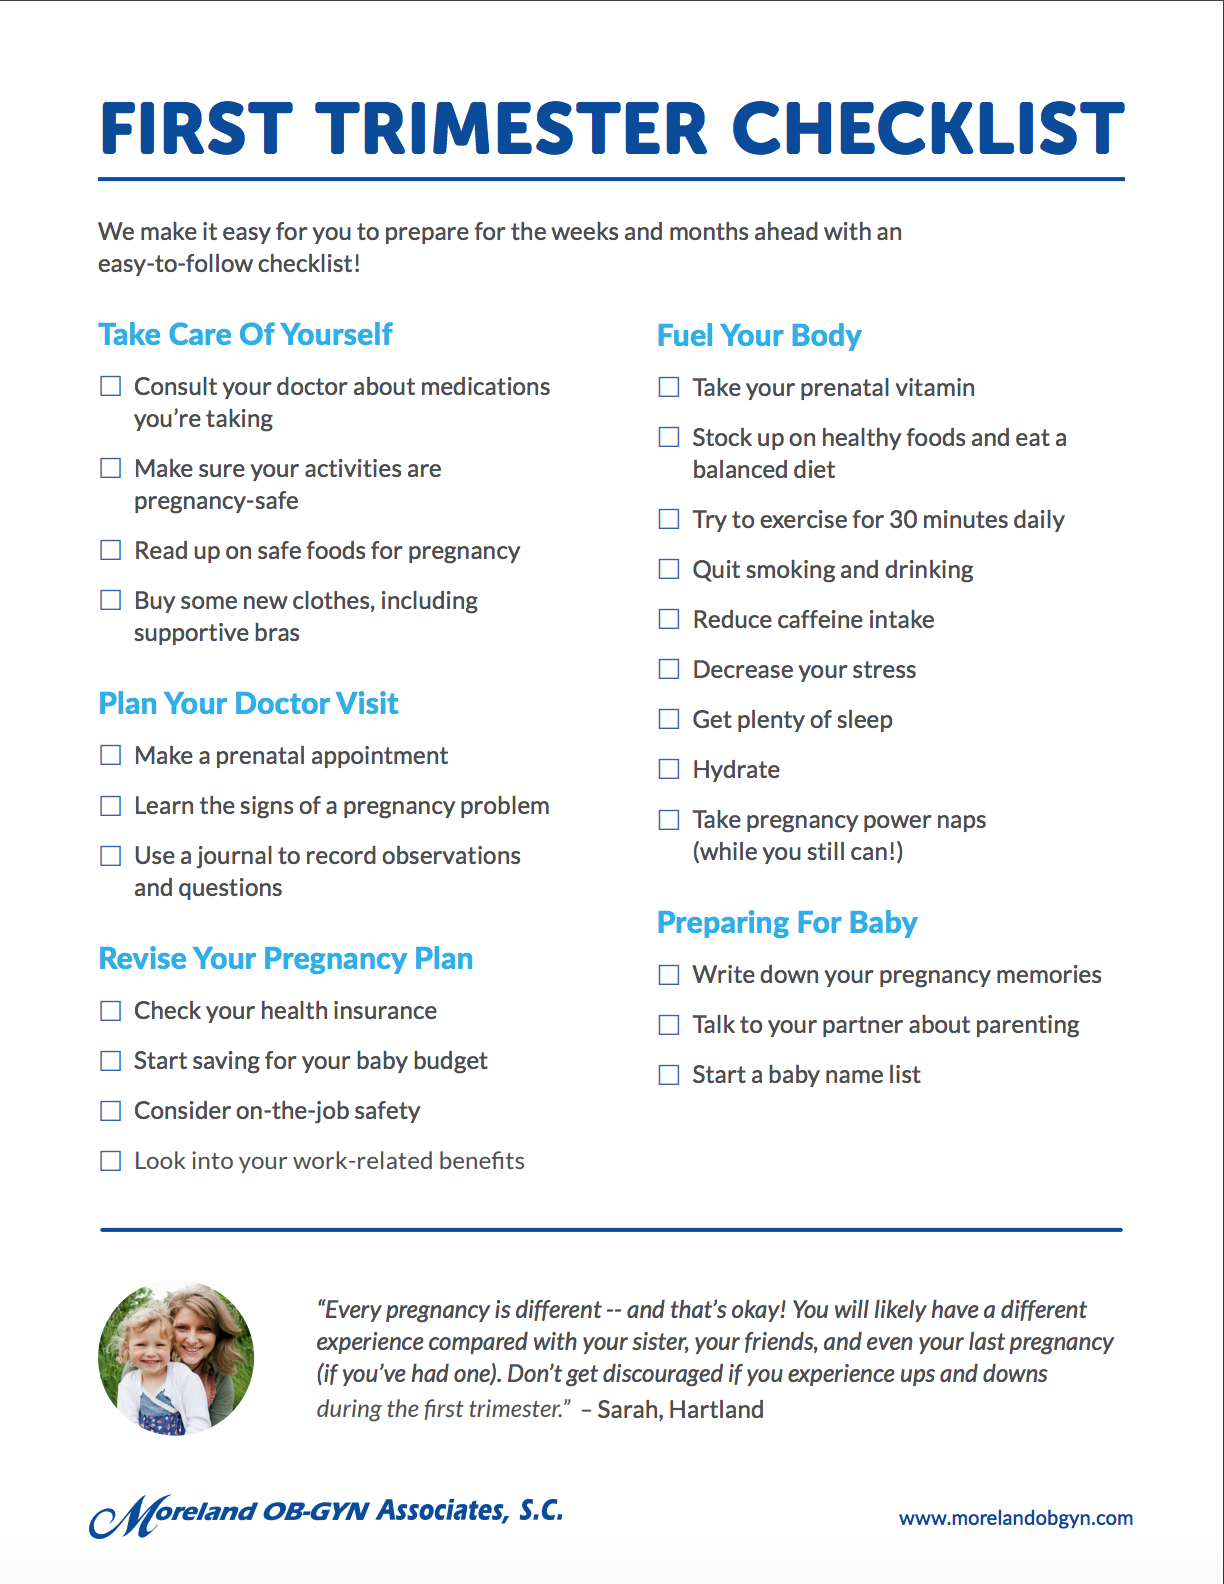 https://cdn2.hubspot.net/hubfs/3326027/Imported_Blog_Media/first-trimester-checklist-1.png